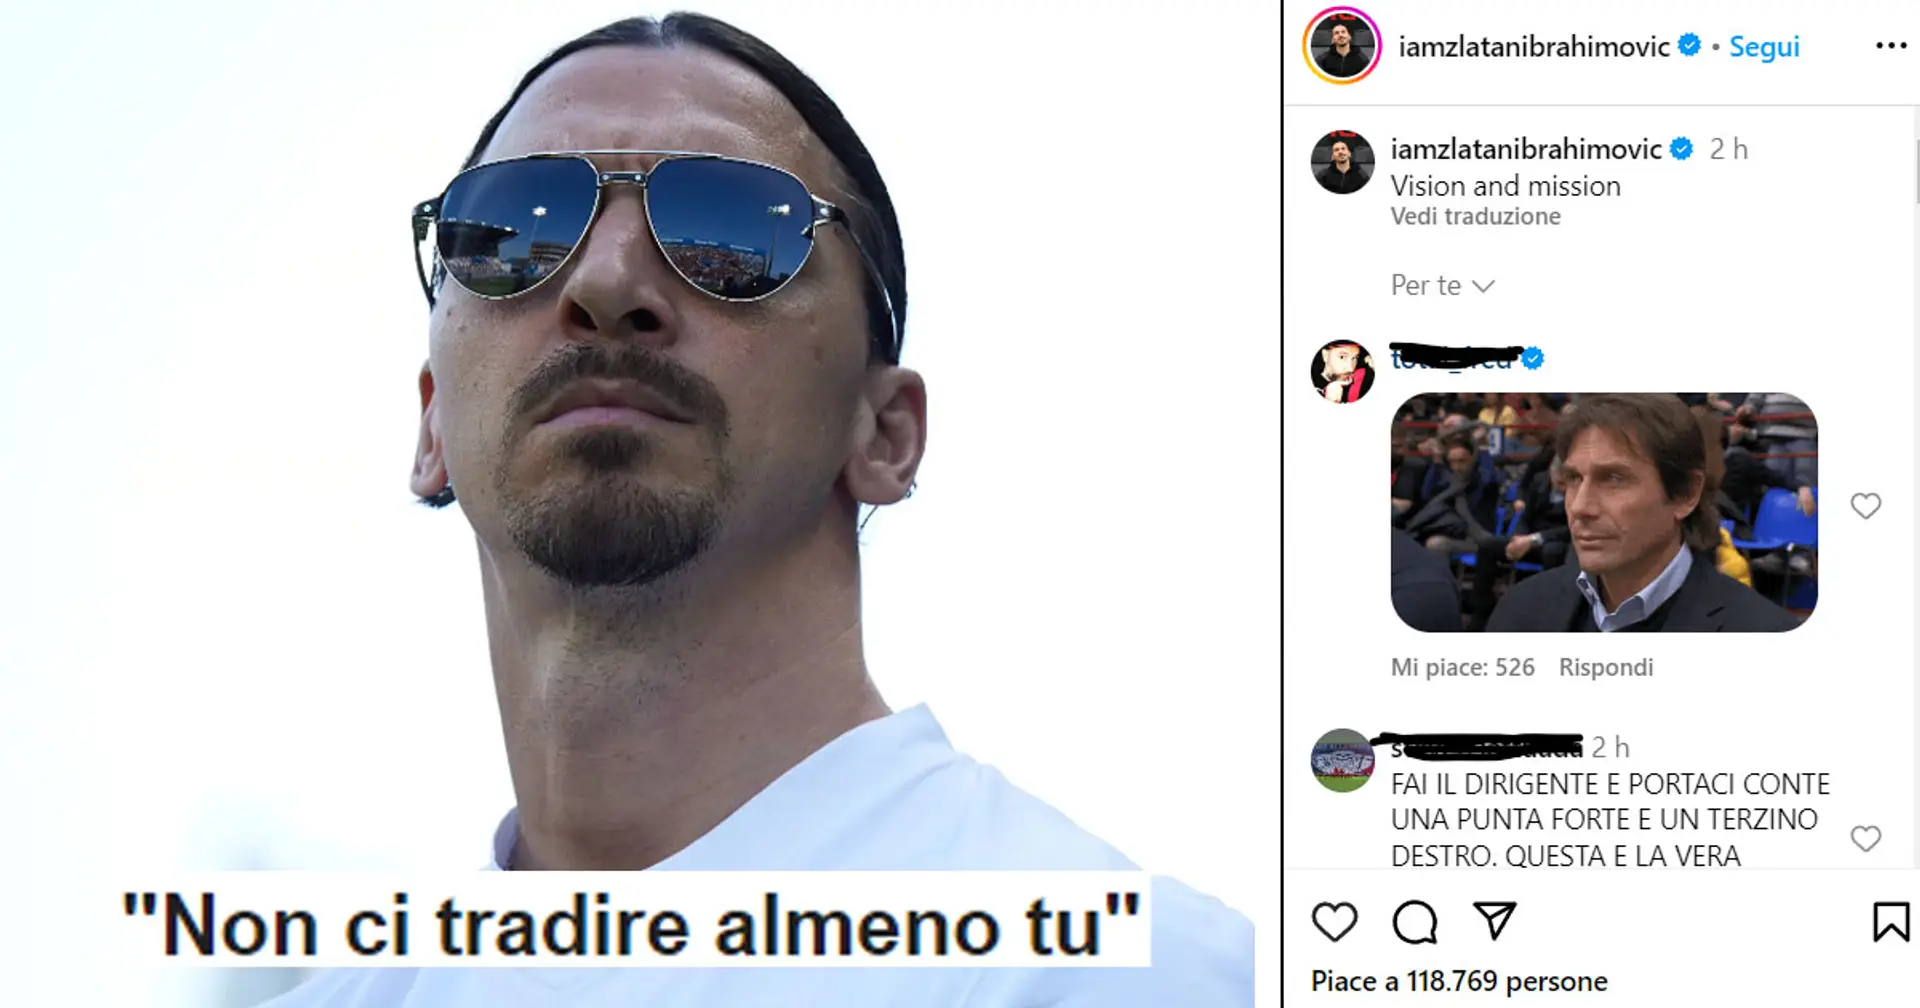 Ibrahimovic pubblica un messaggio sui social, i tifosi del Milan alzano la voce: "Non ci tradire almeno tu"